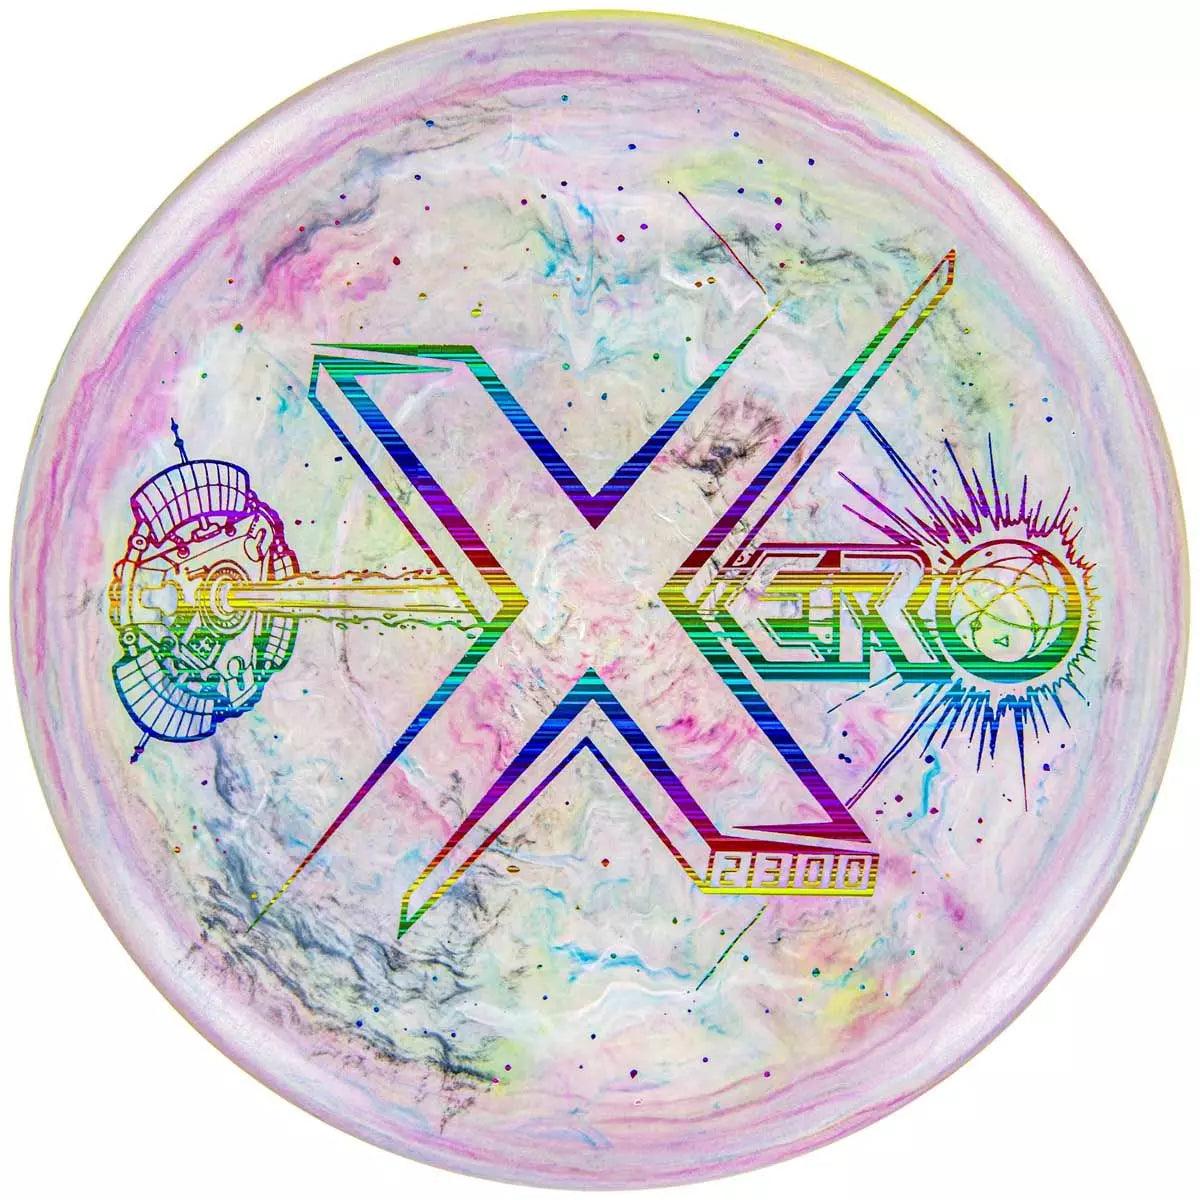 Innova XT Xero - SE X Galactic Edition - Disc Golf Deals USA